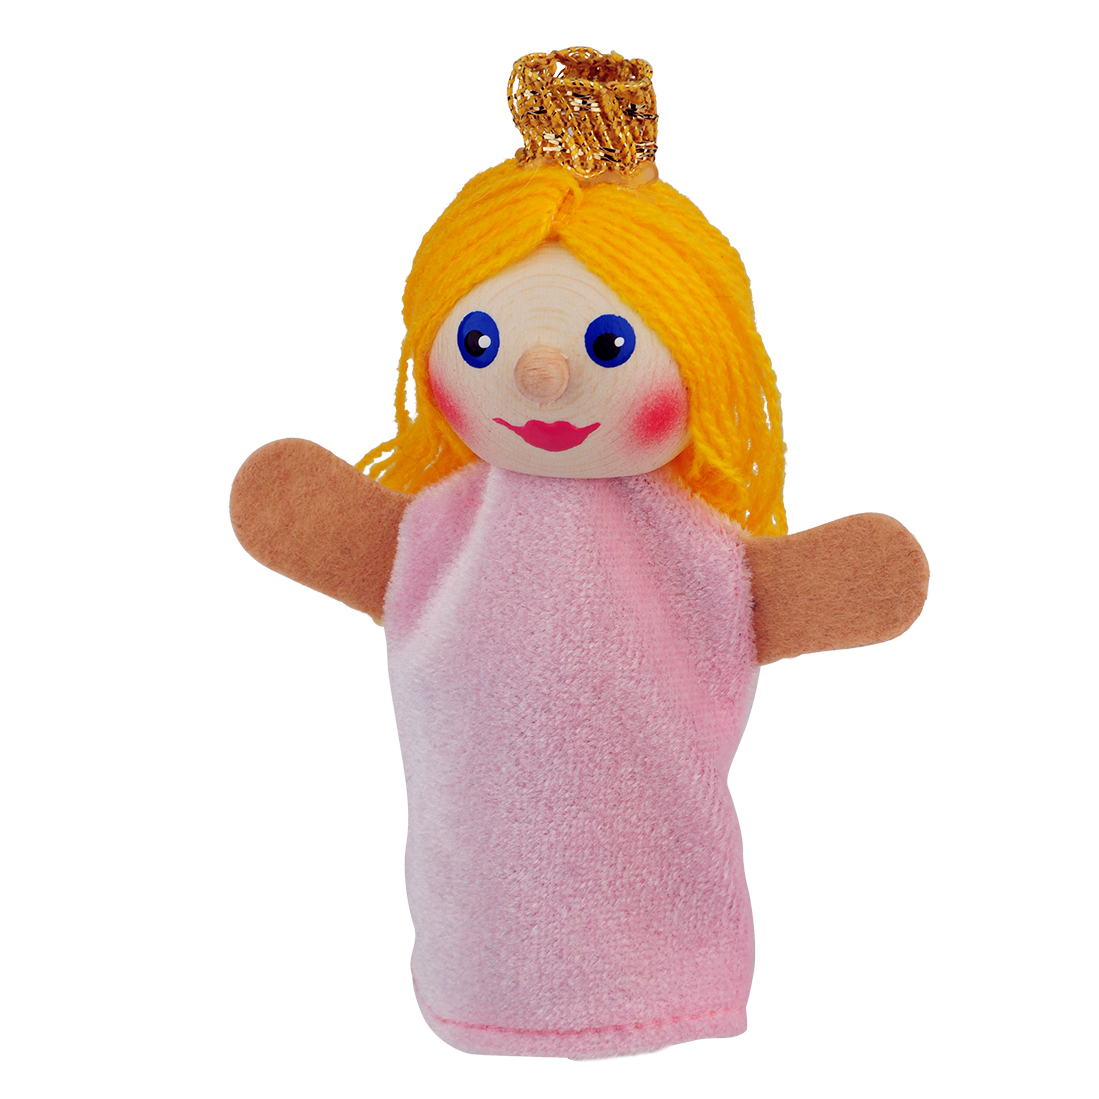 Finger puppet princess - KERSA Fipu